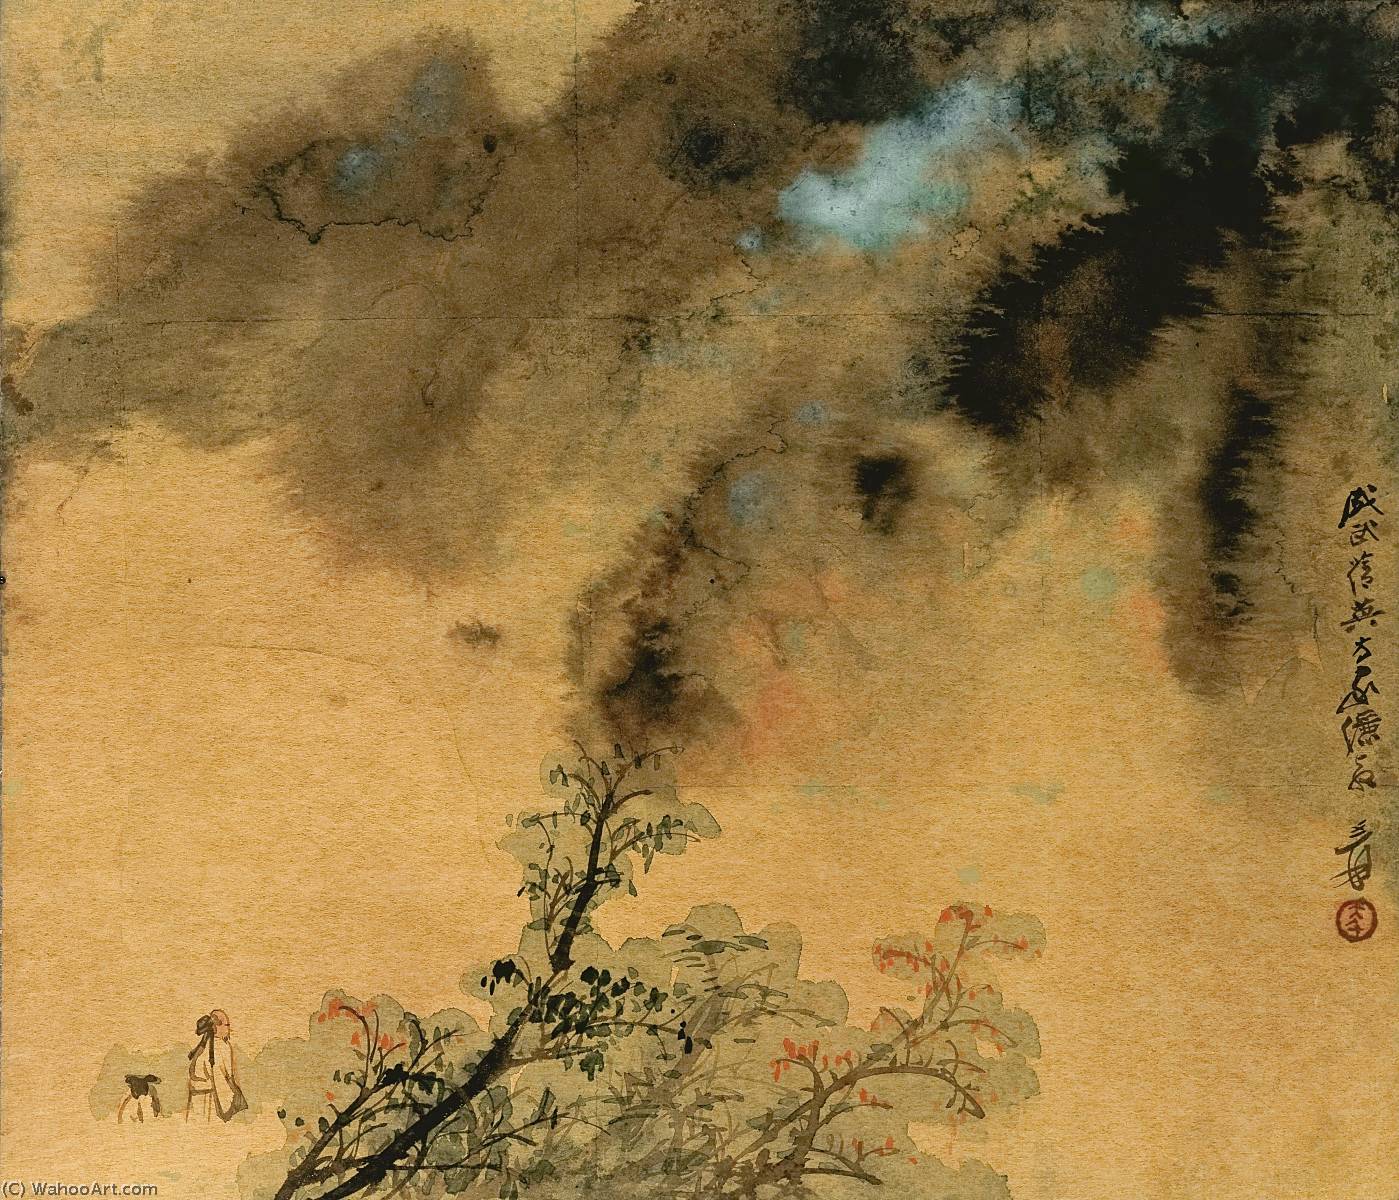 WikiOO.org - Encyclopedia of Fine Arts - Lukisan, Artwork Zhang Daqian - STROLLING TO THE AUTUMN MOUNTAIN